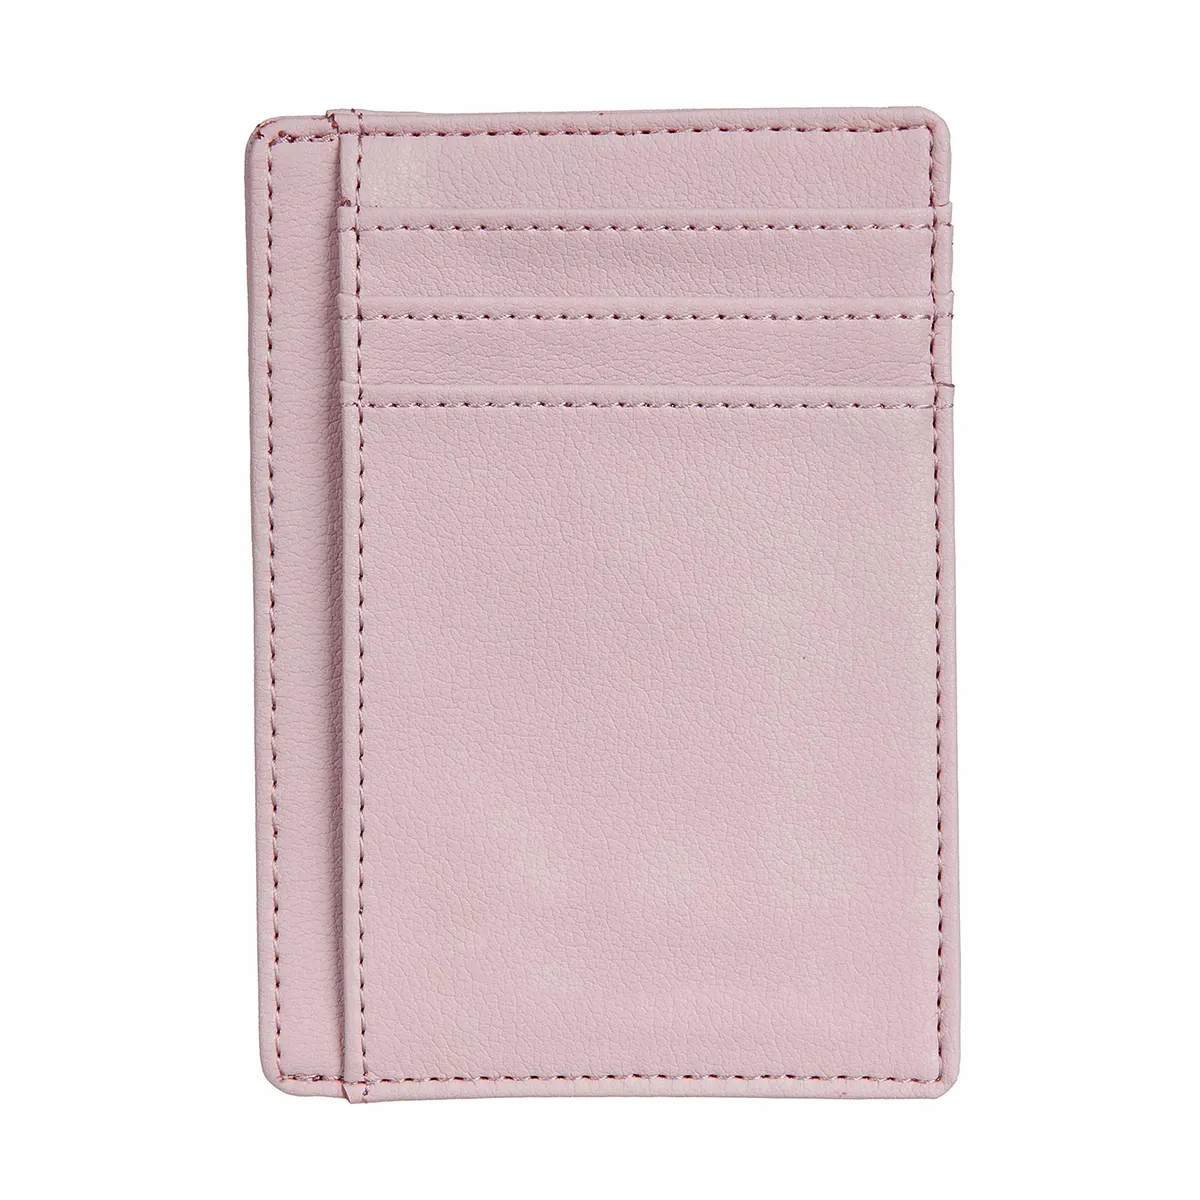 Модный кошелек с держателем для карт в минималистском стиле на переднем кармане